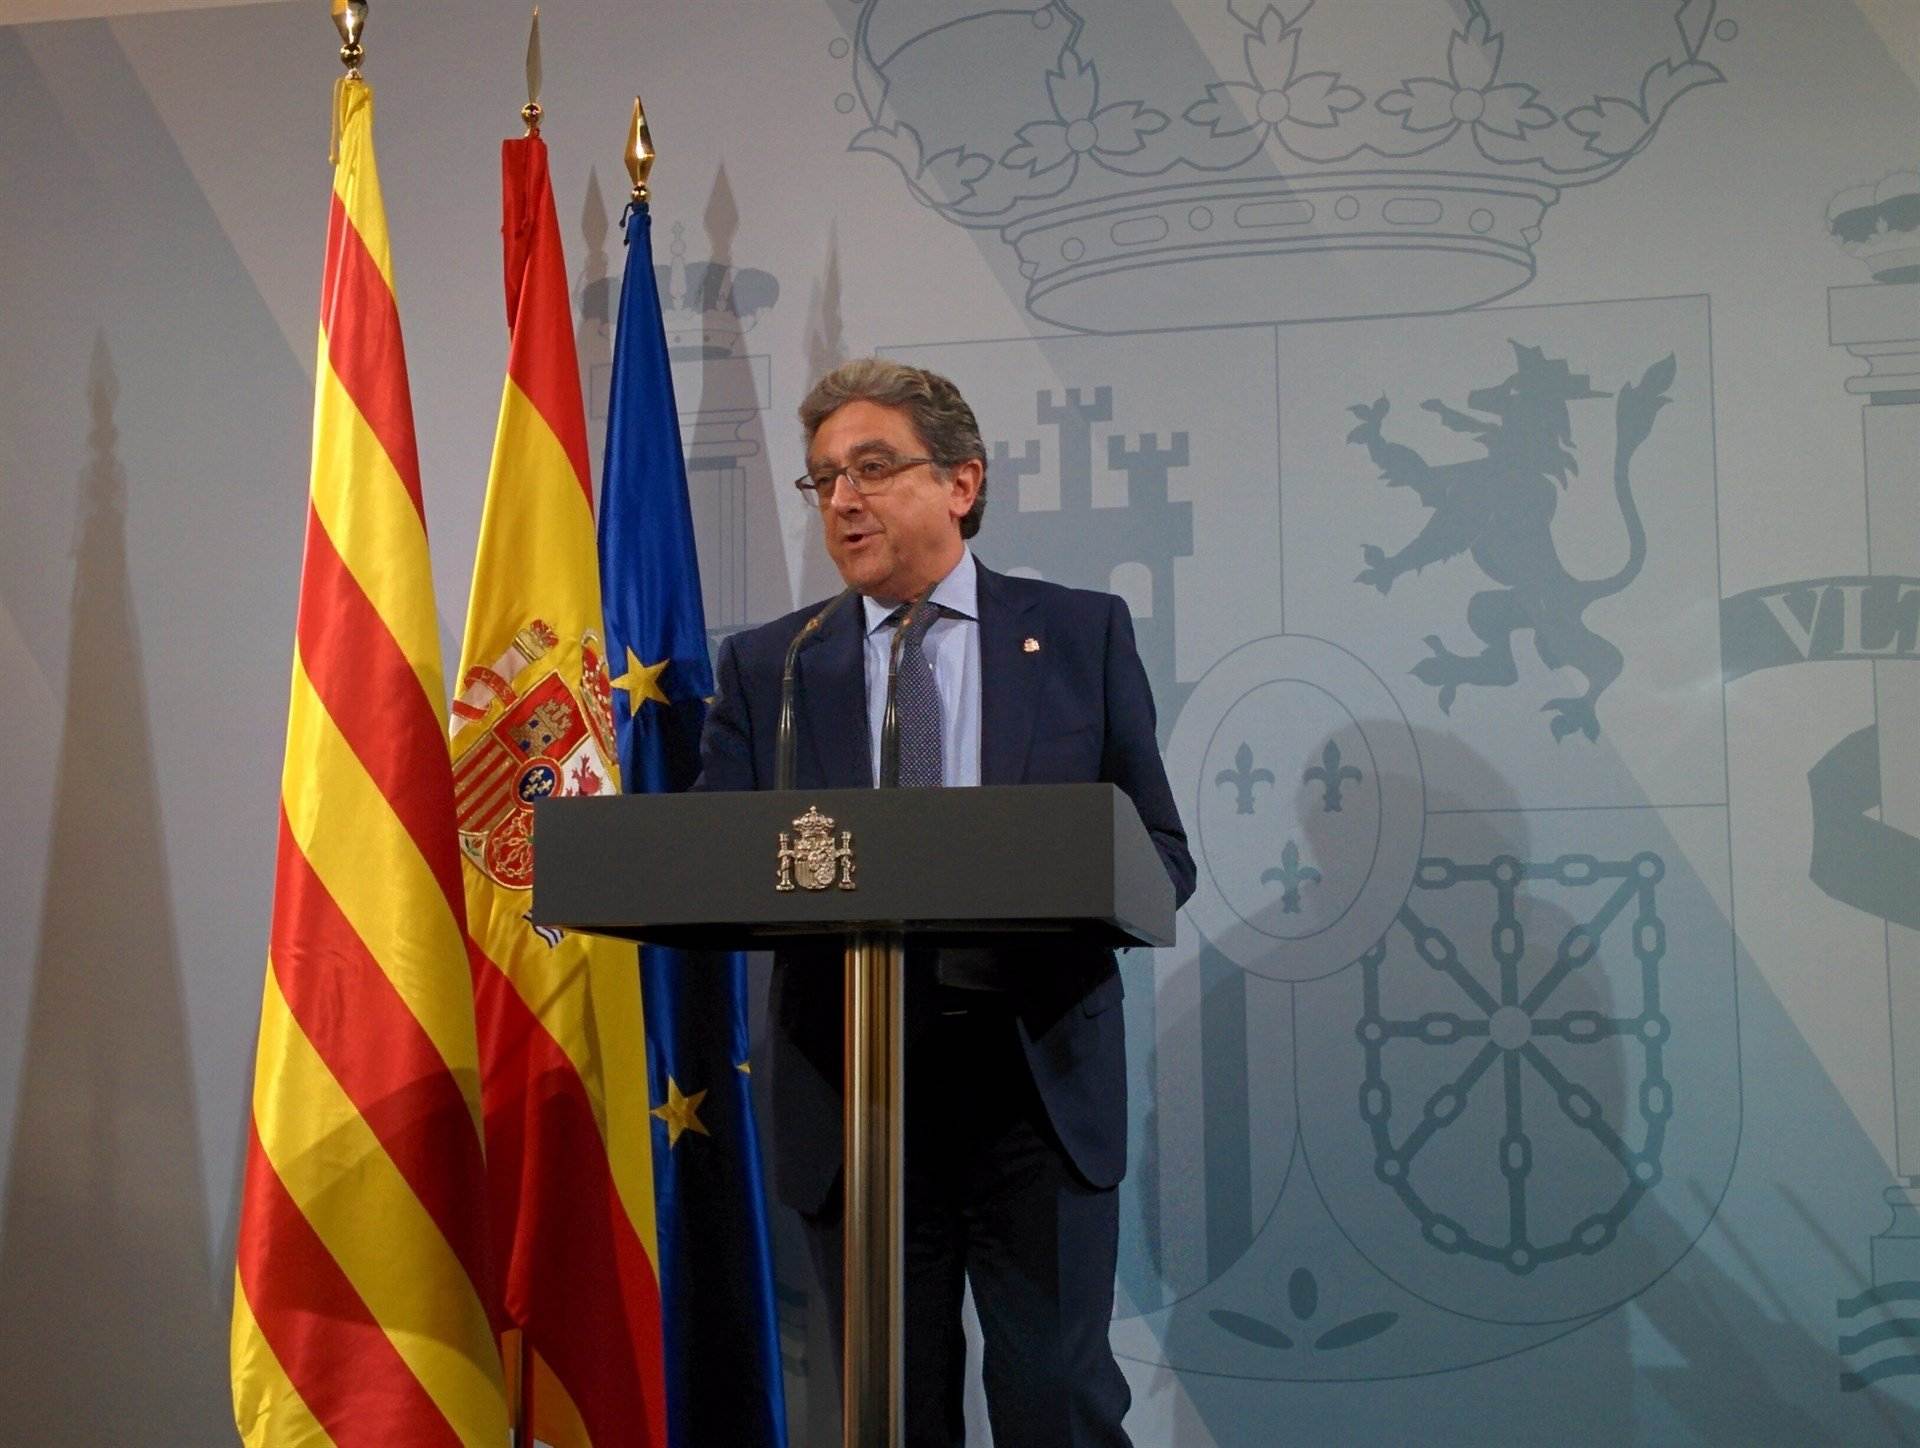 Millo: "Rajoy reprendrà el diàleg amb la investidura d'un nou president"